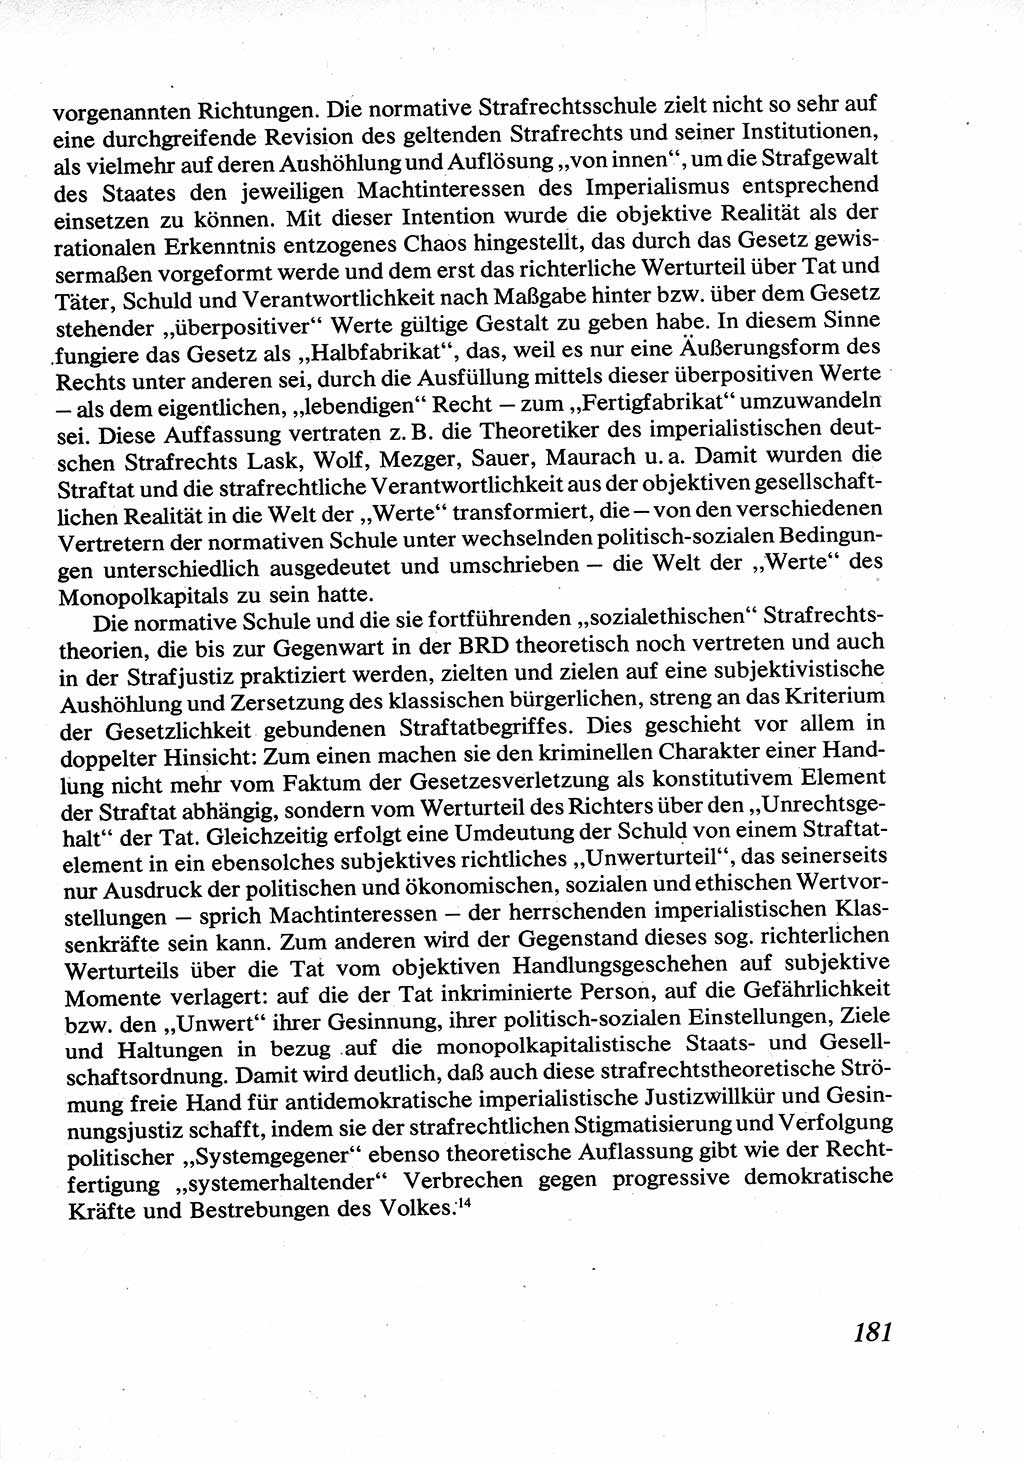 Strafrecht [Deutsche Demokratische Republik (DDR)], Allgemeiner Teil, Lehrbuch 1976, Seite 181 (Strafr. DDR AT Lb. 1976, S. 181)